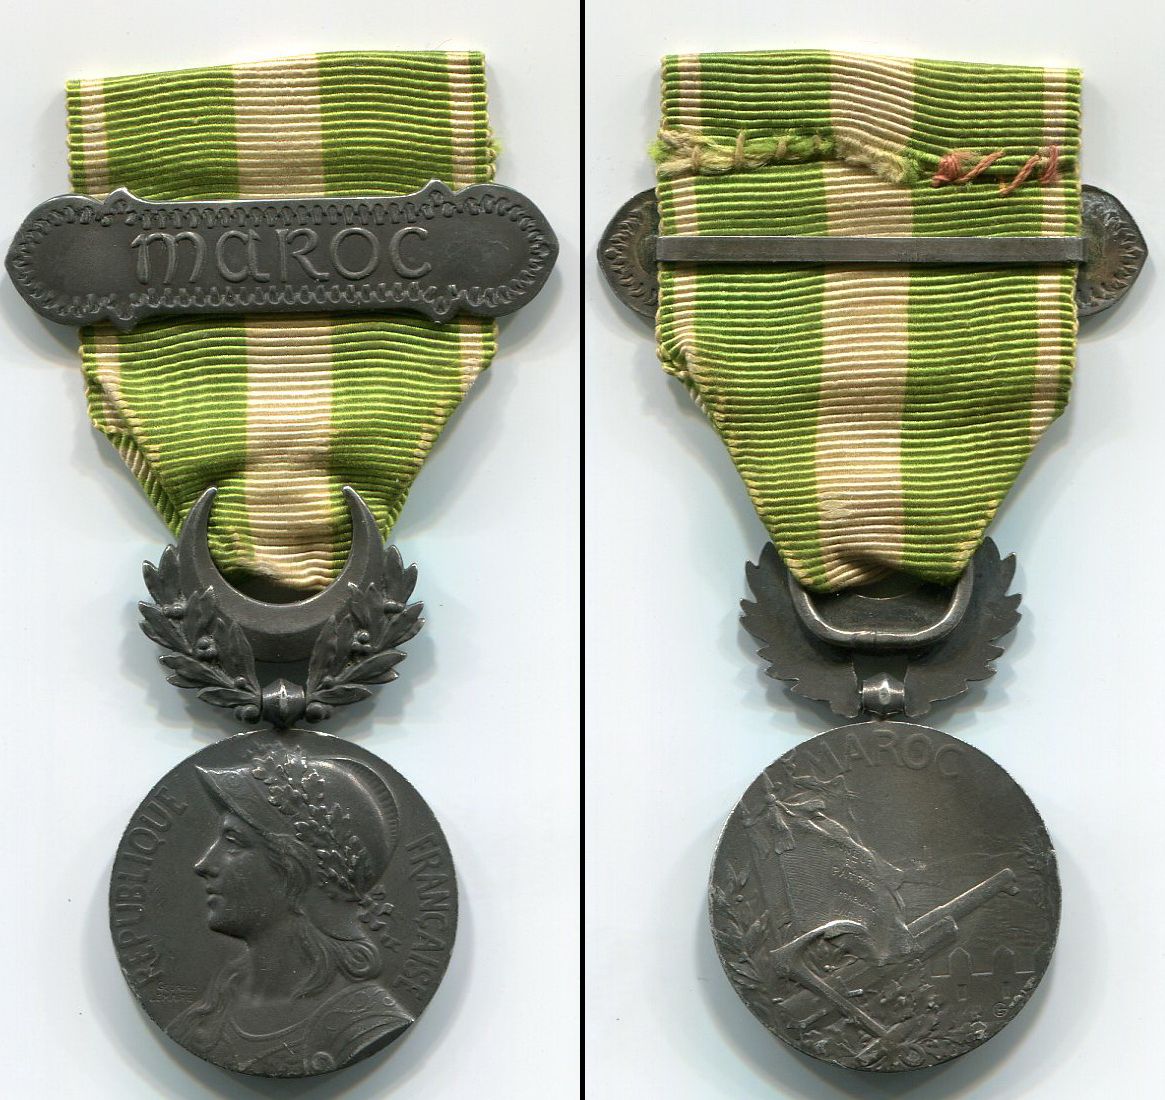 Médaille Commémorative du Maroc.jpg